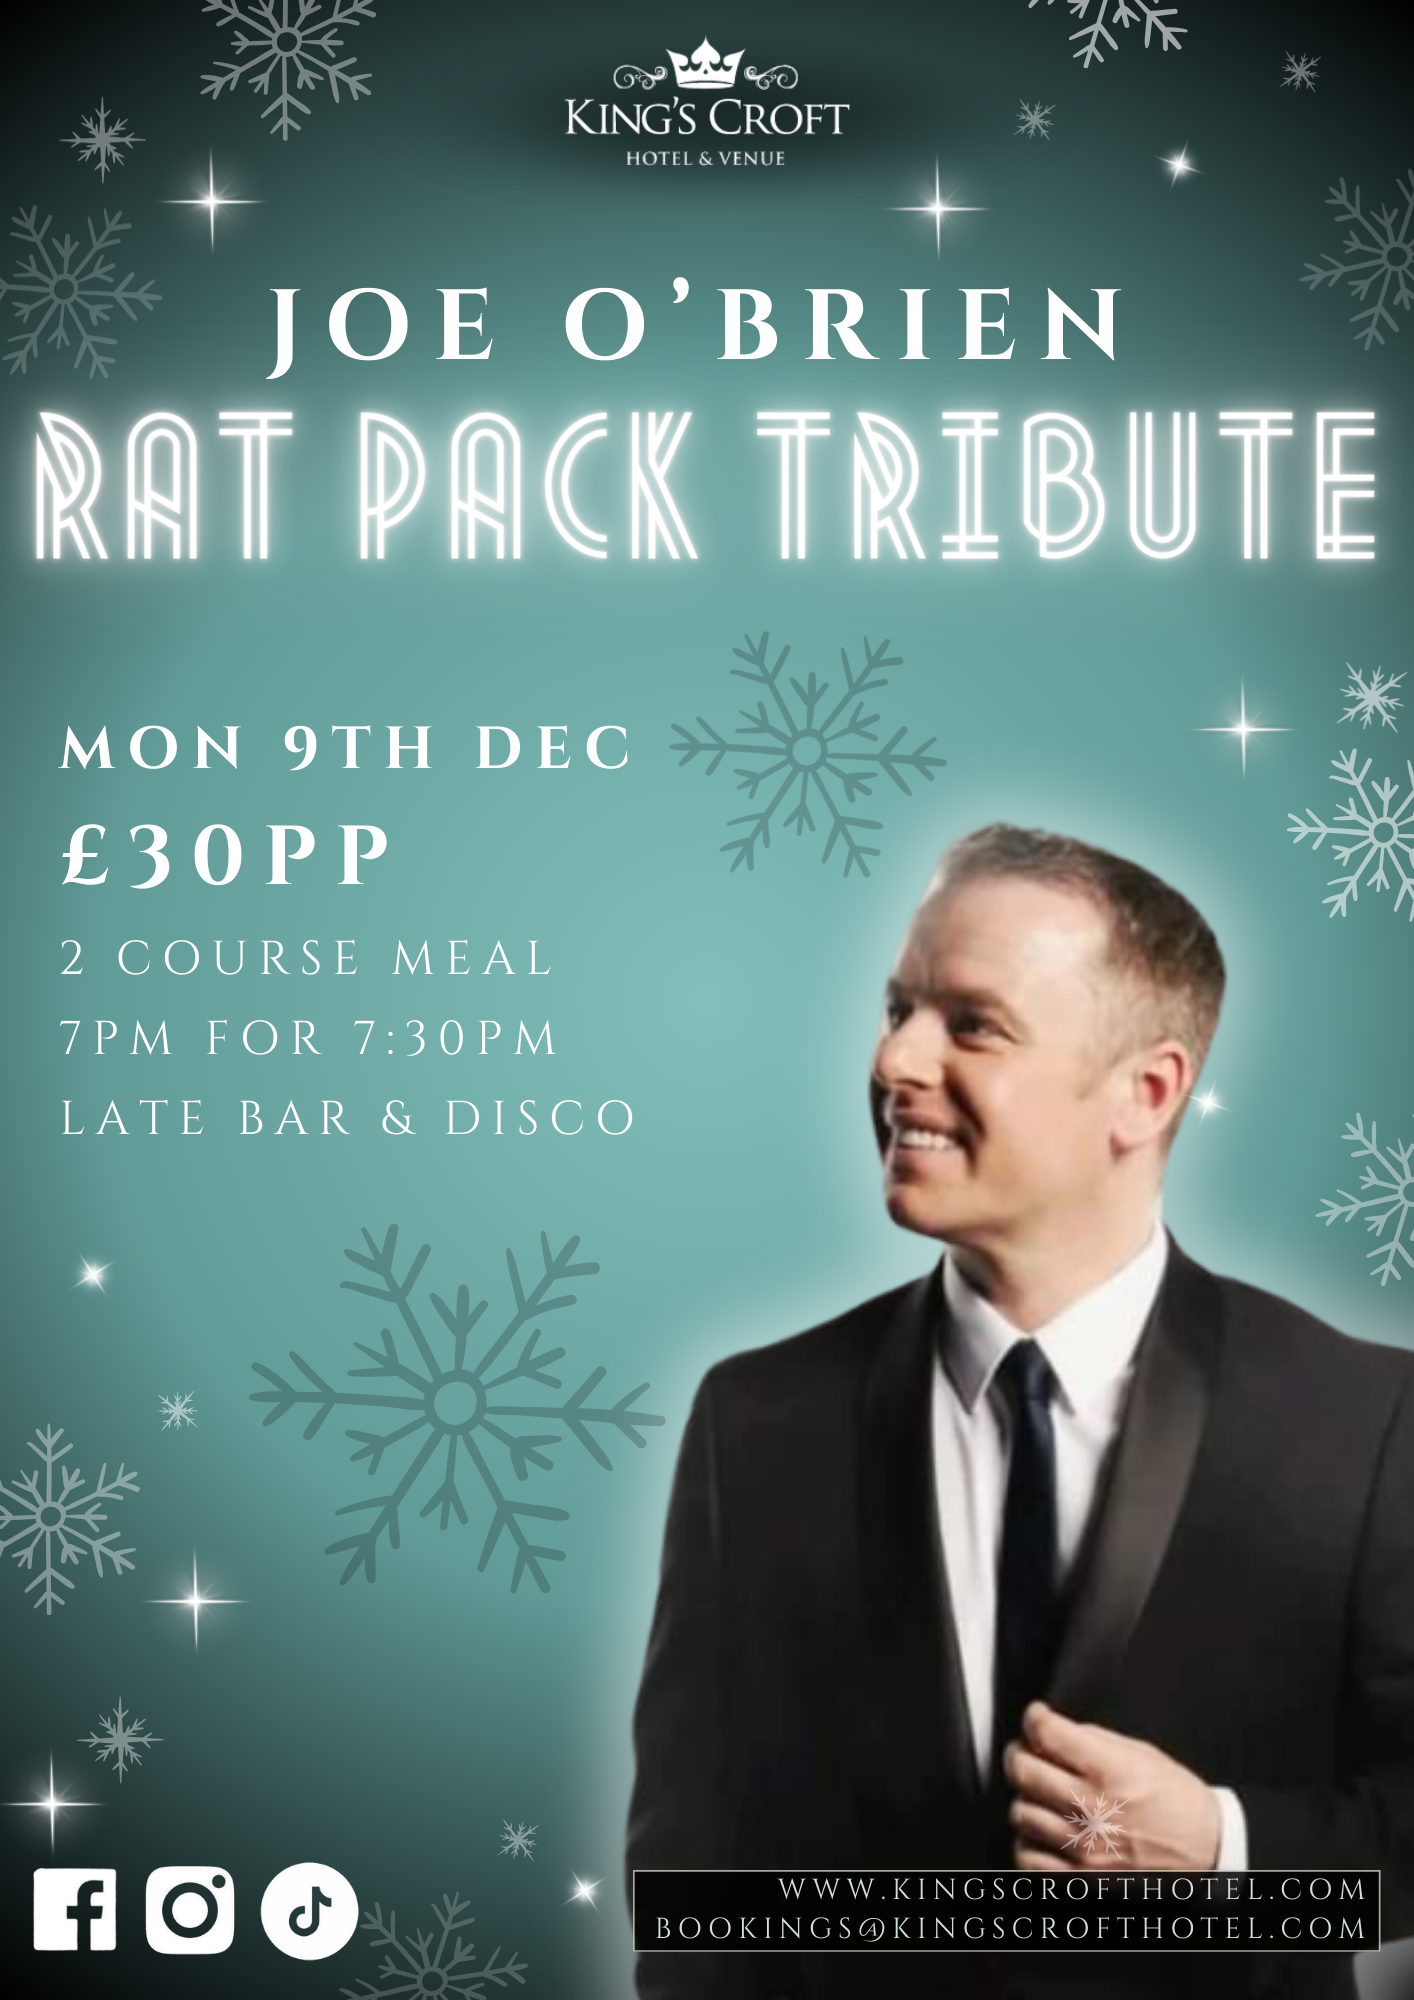 Rat Pack Tribute with Joe O'Brien